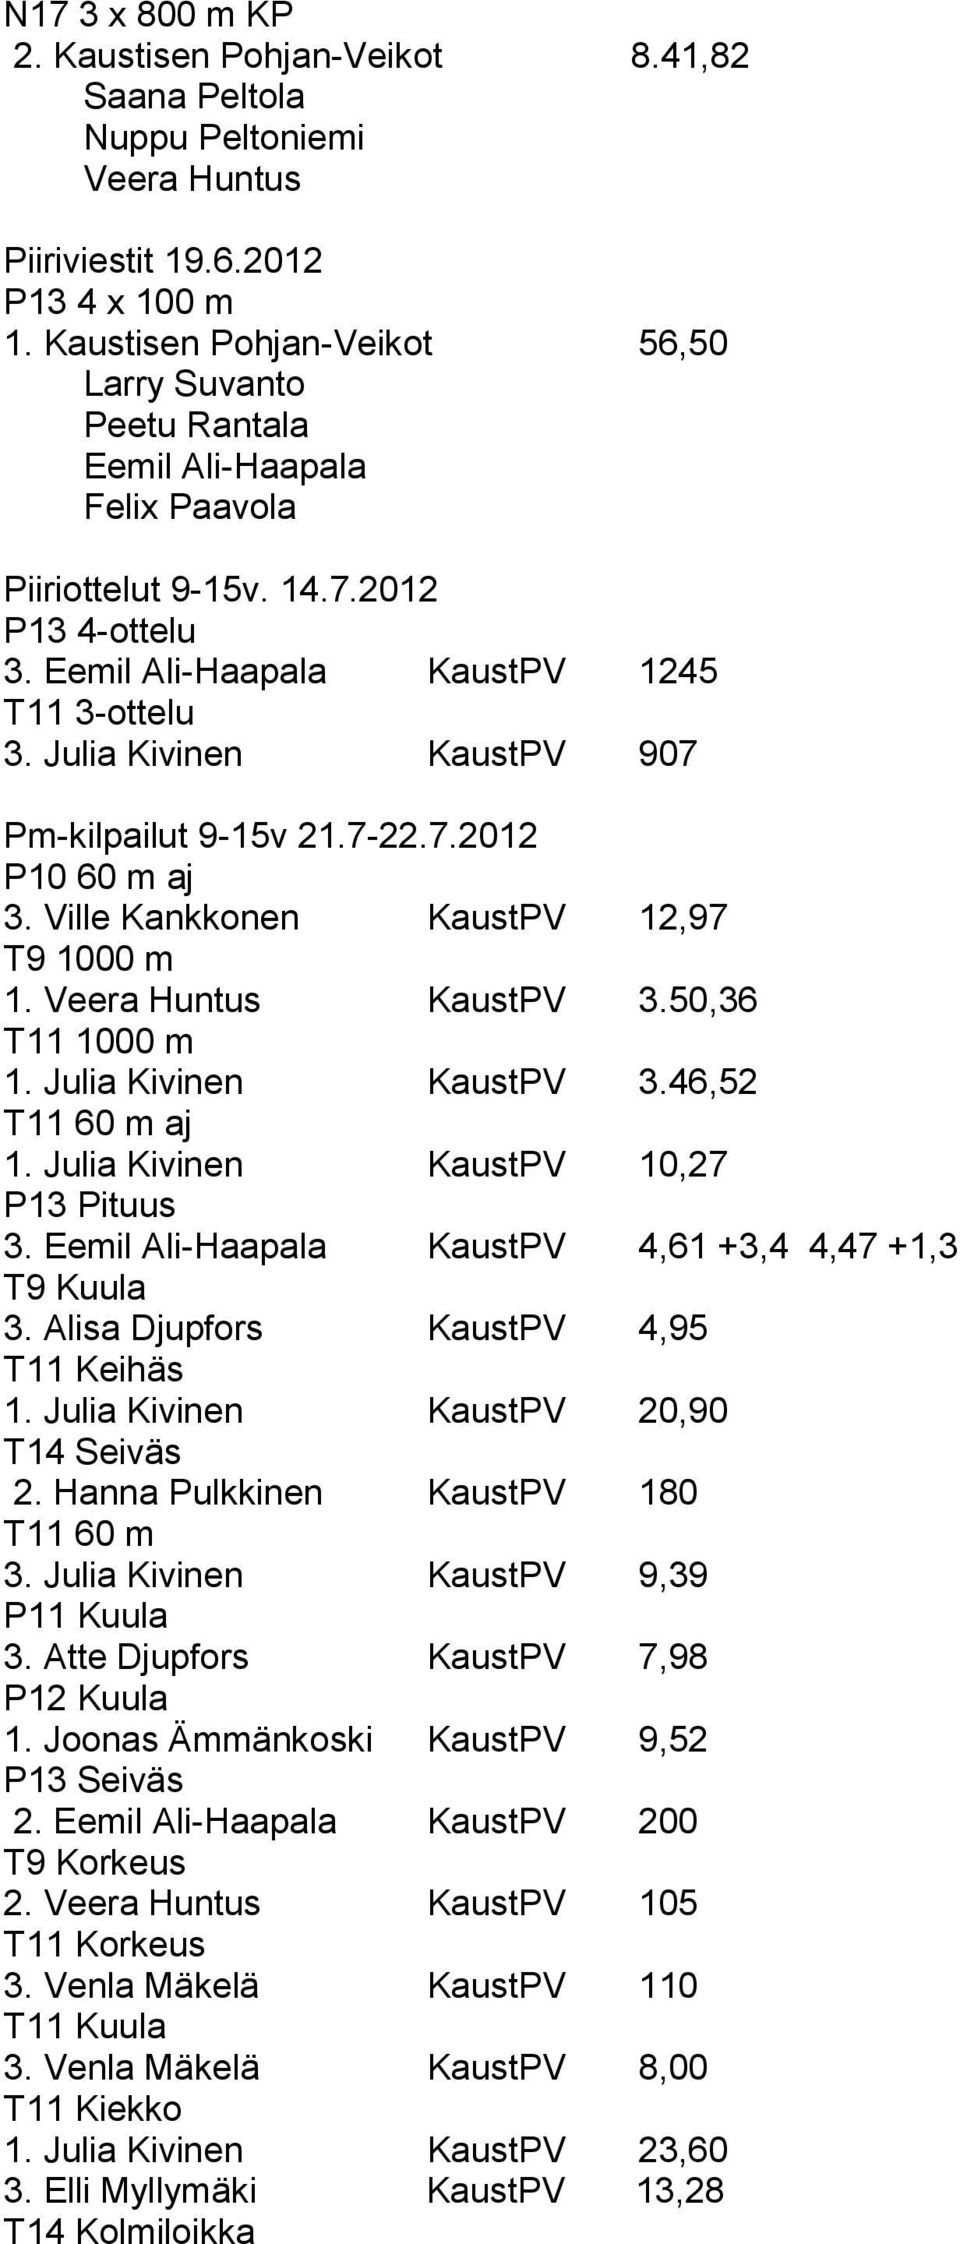 Julia Kivinen KaustPV 907 Pm-kilpailut 9-15v 21.7-22.7.2012 P10 60 m aj 3. Ville Kankkonen KaustPV 12,97 T9 1000 m 1. Veera Huntus KaustPV 3.50,36 T11 1000 m 1. Julia Kivinen KaustPV 3.